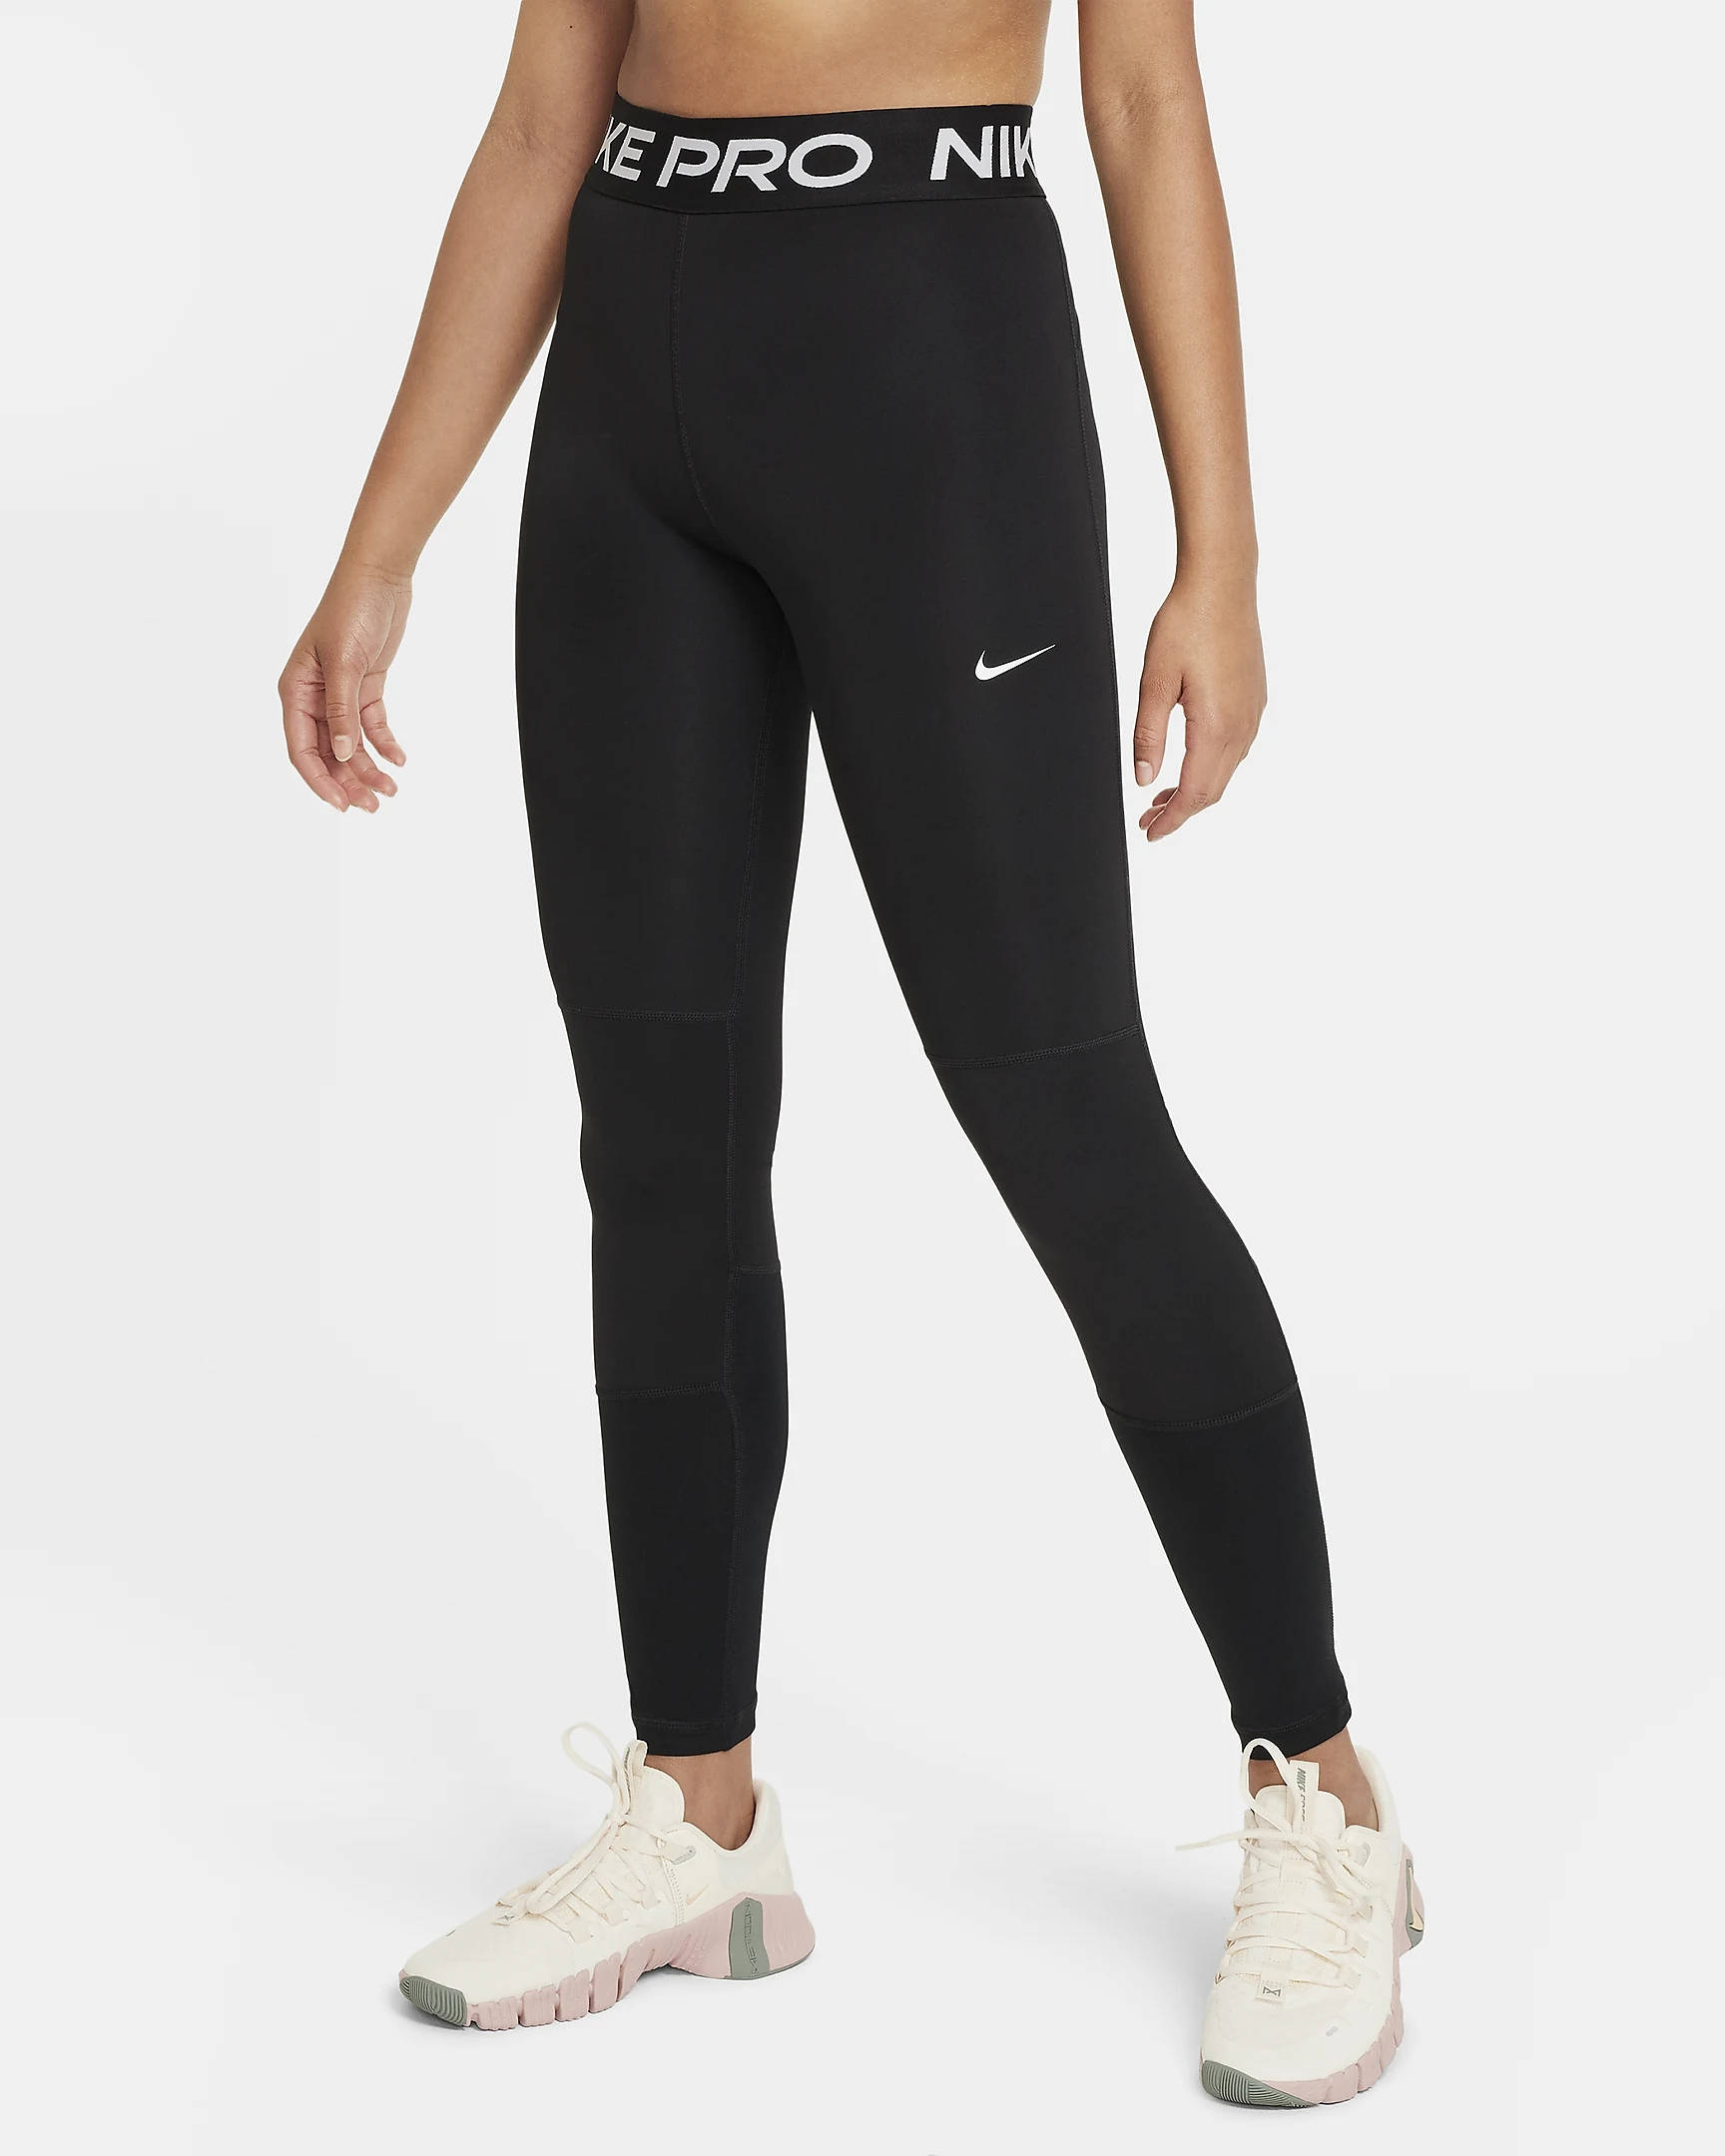 Nike Girl's Pro Dri-FIT Warm Training Tights (Black, X-Small